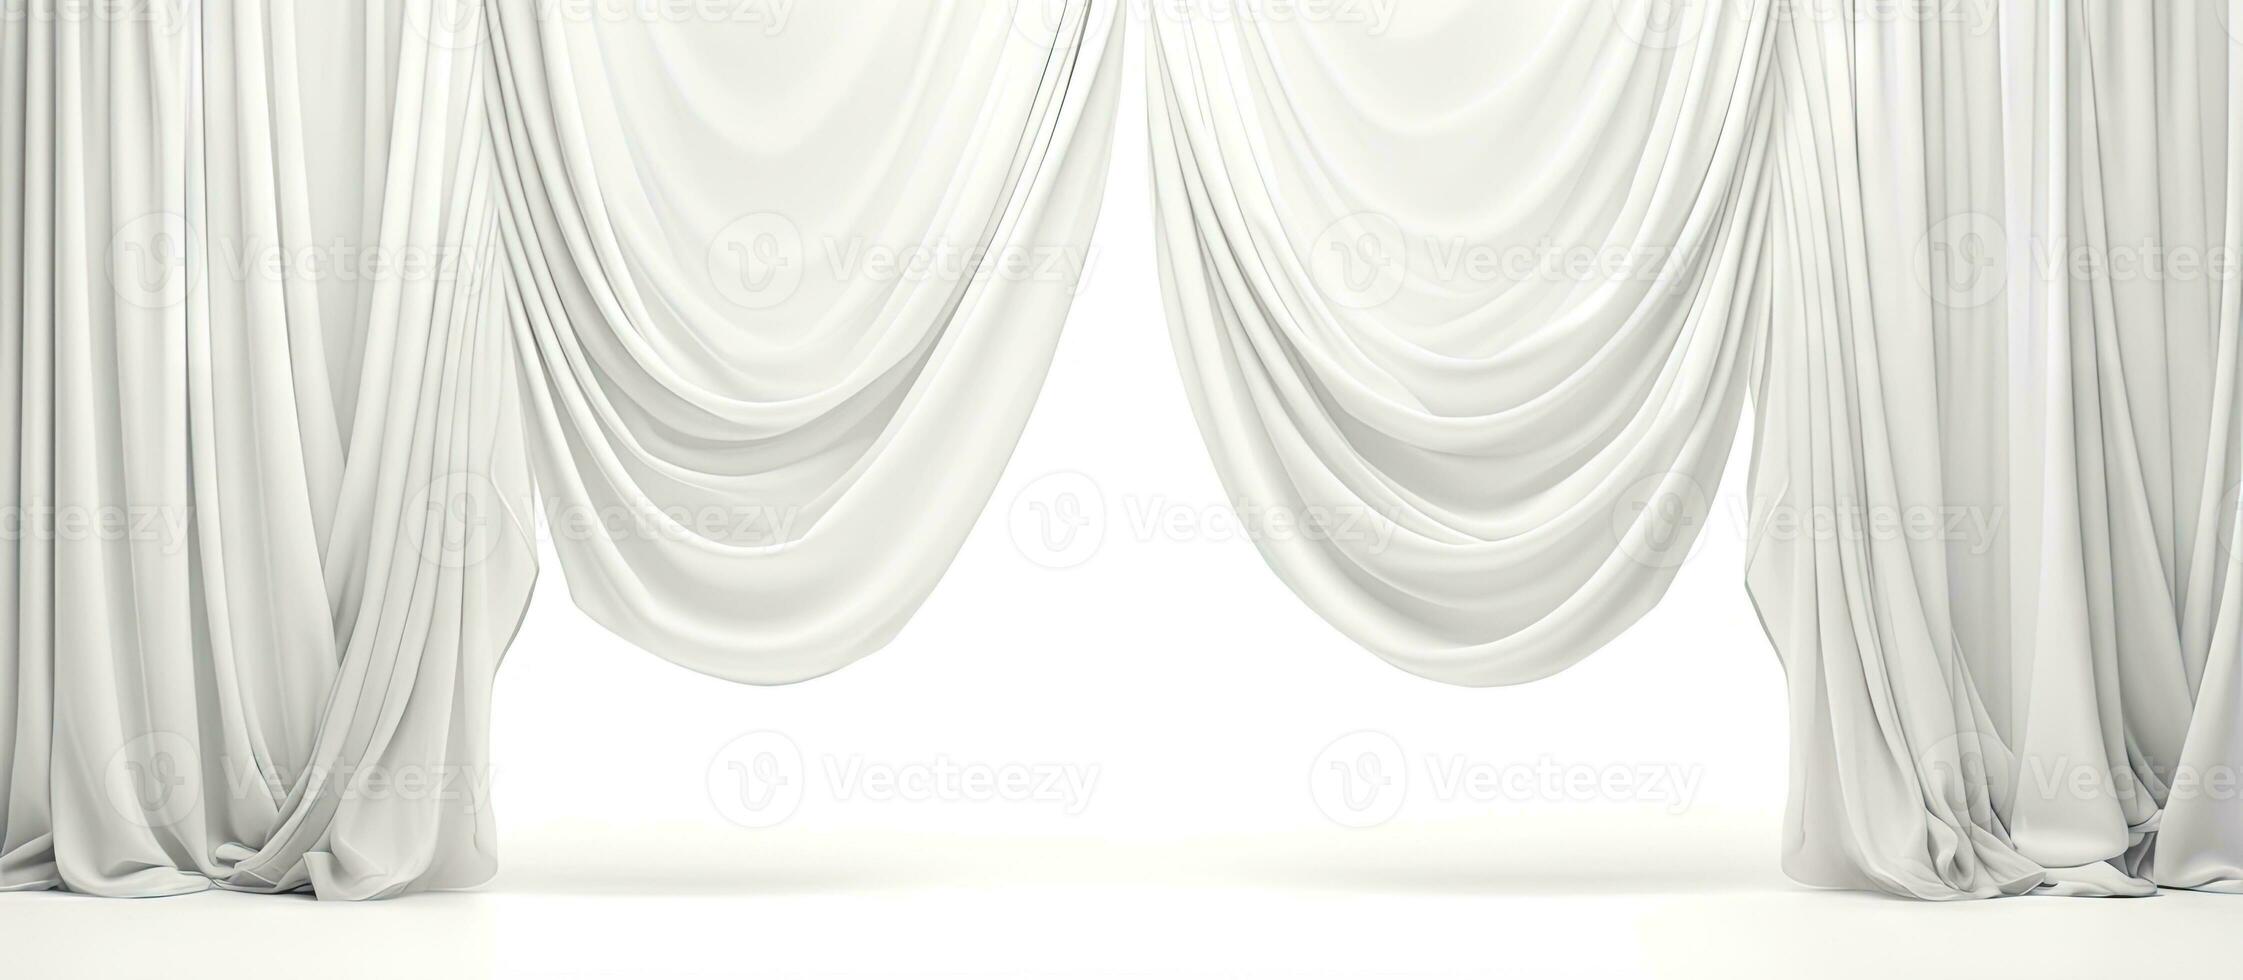 isolerat vit ridå möbel på vit bakgrund illustration foto